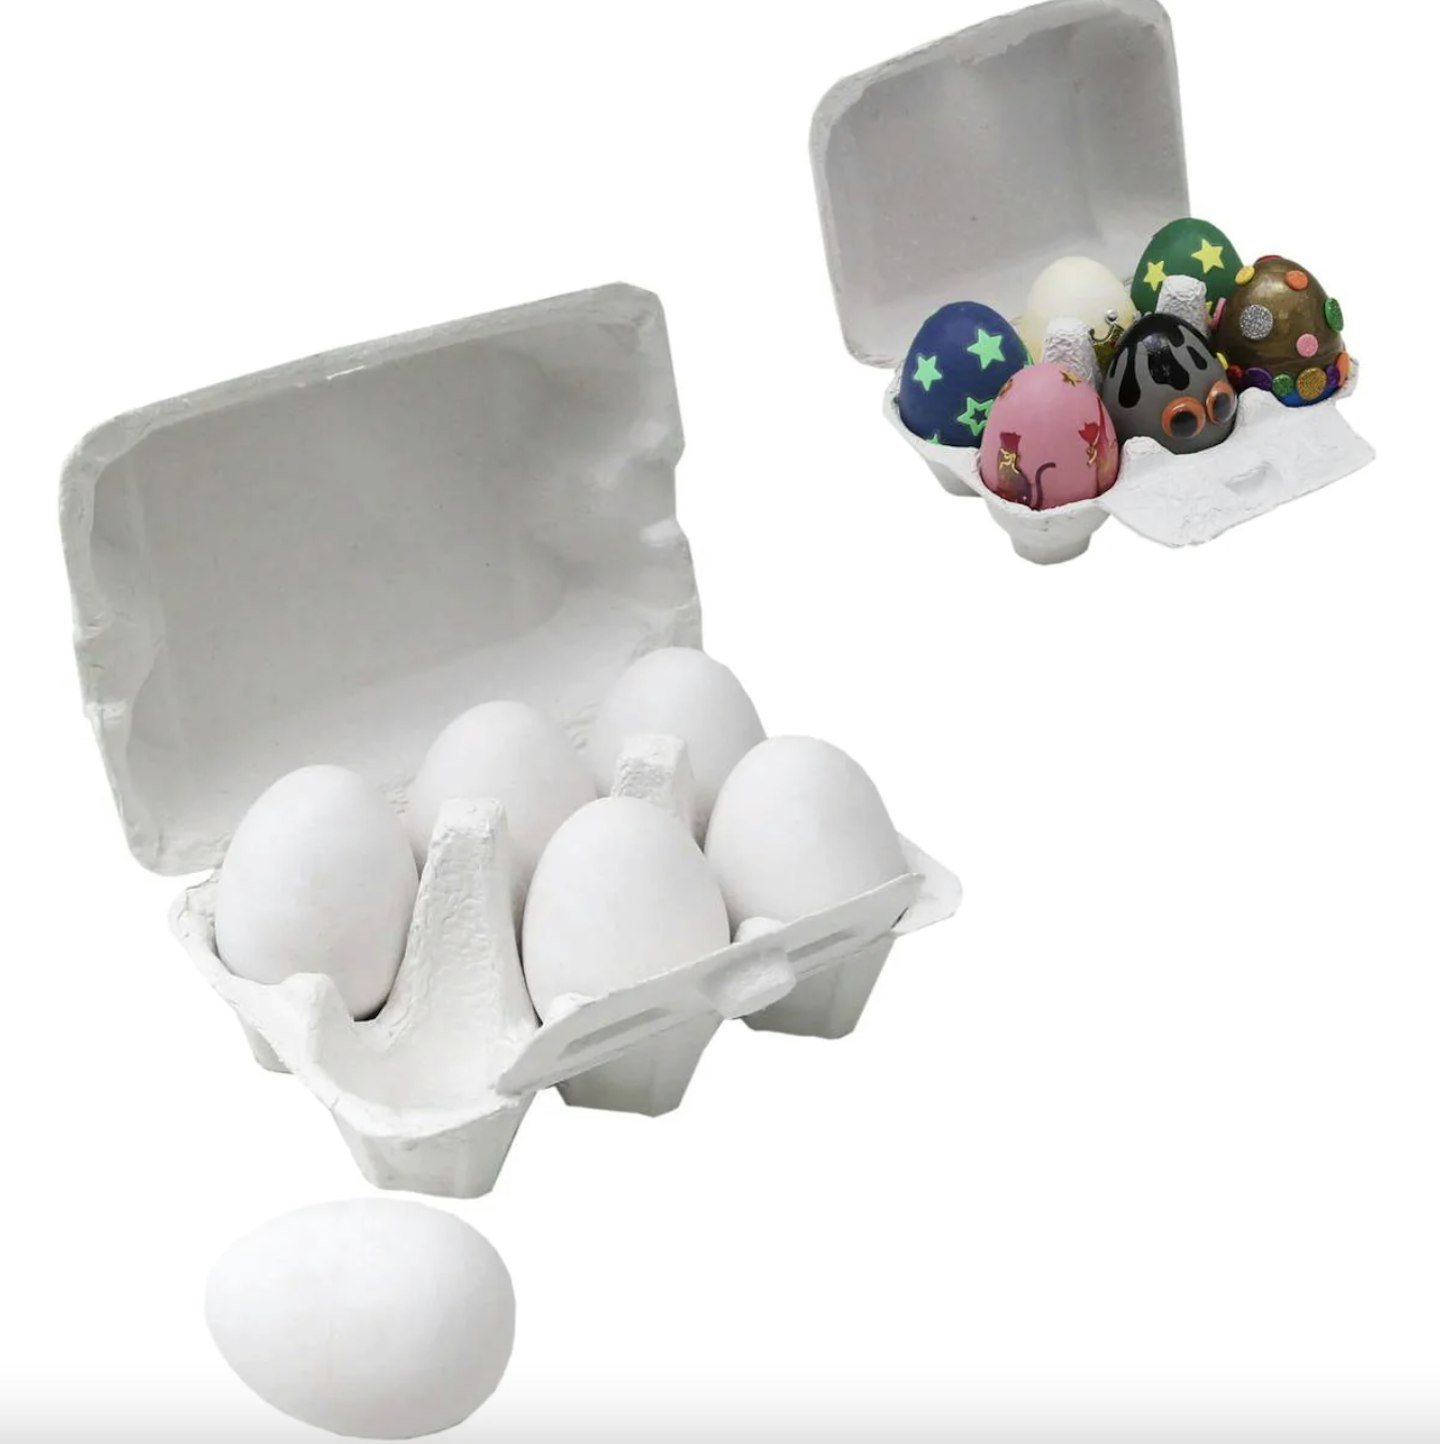 Decorate Your Own Ceramic Eggs